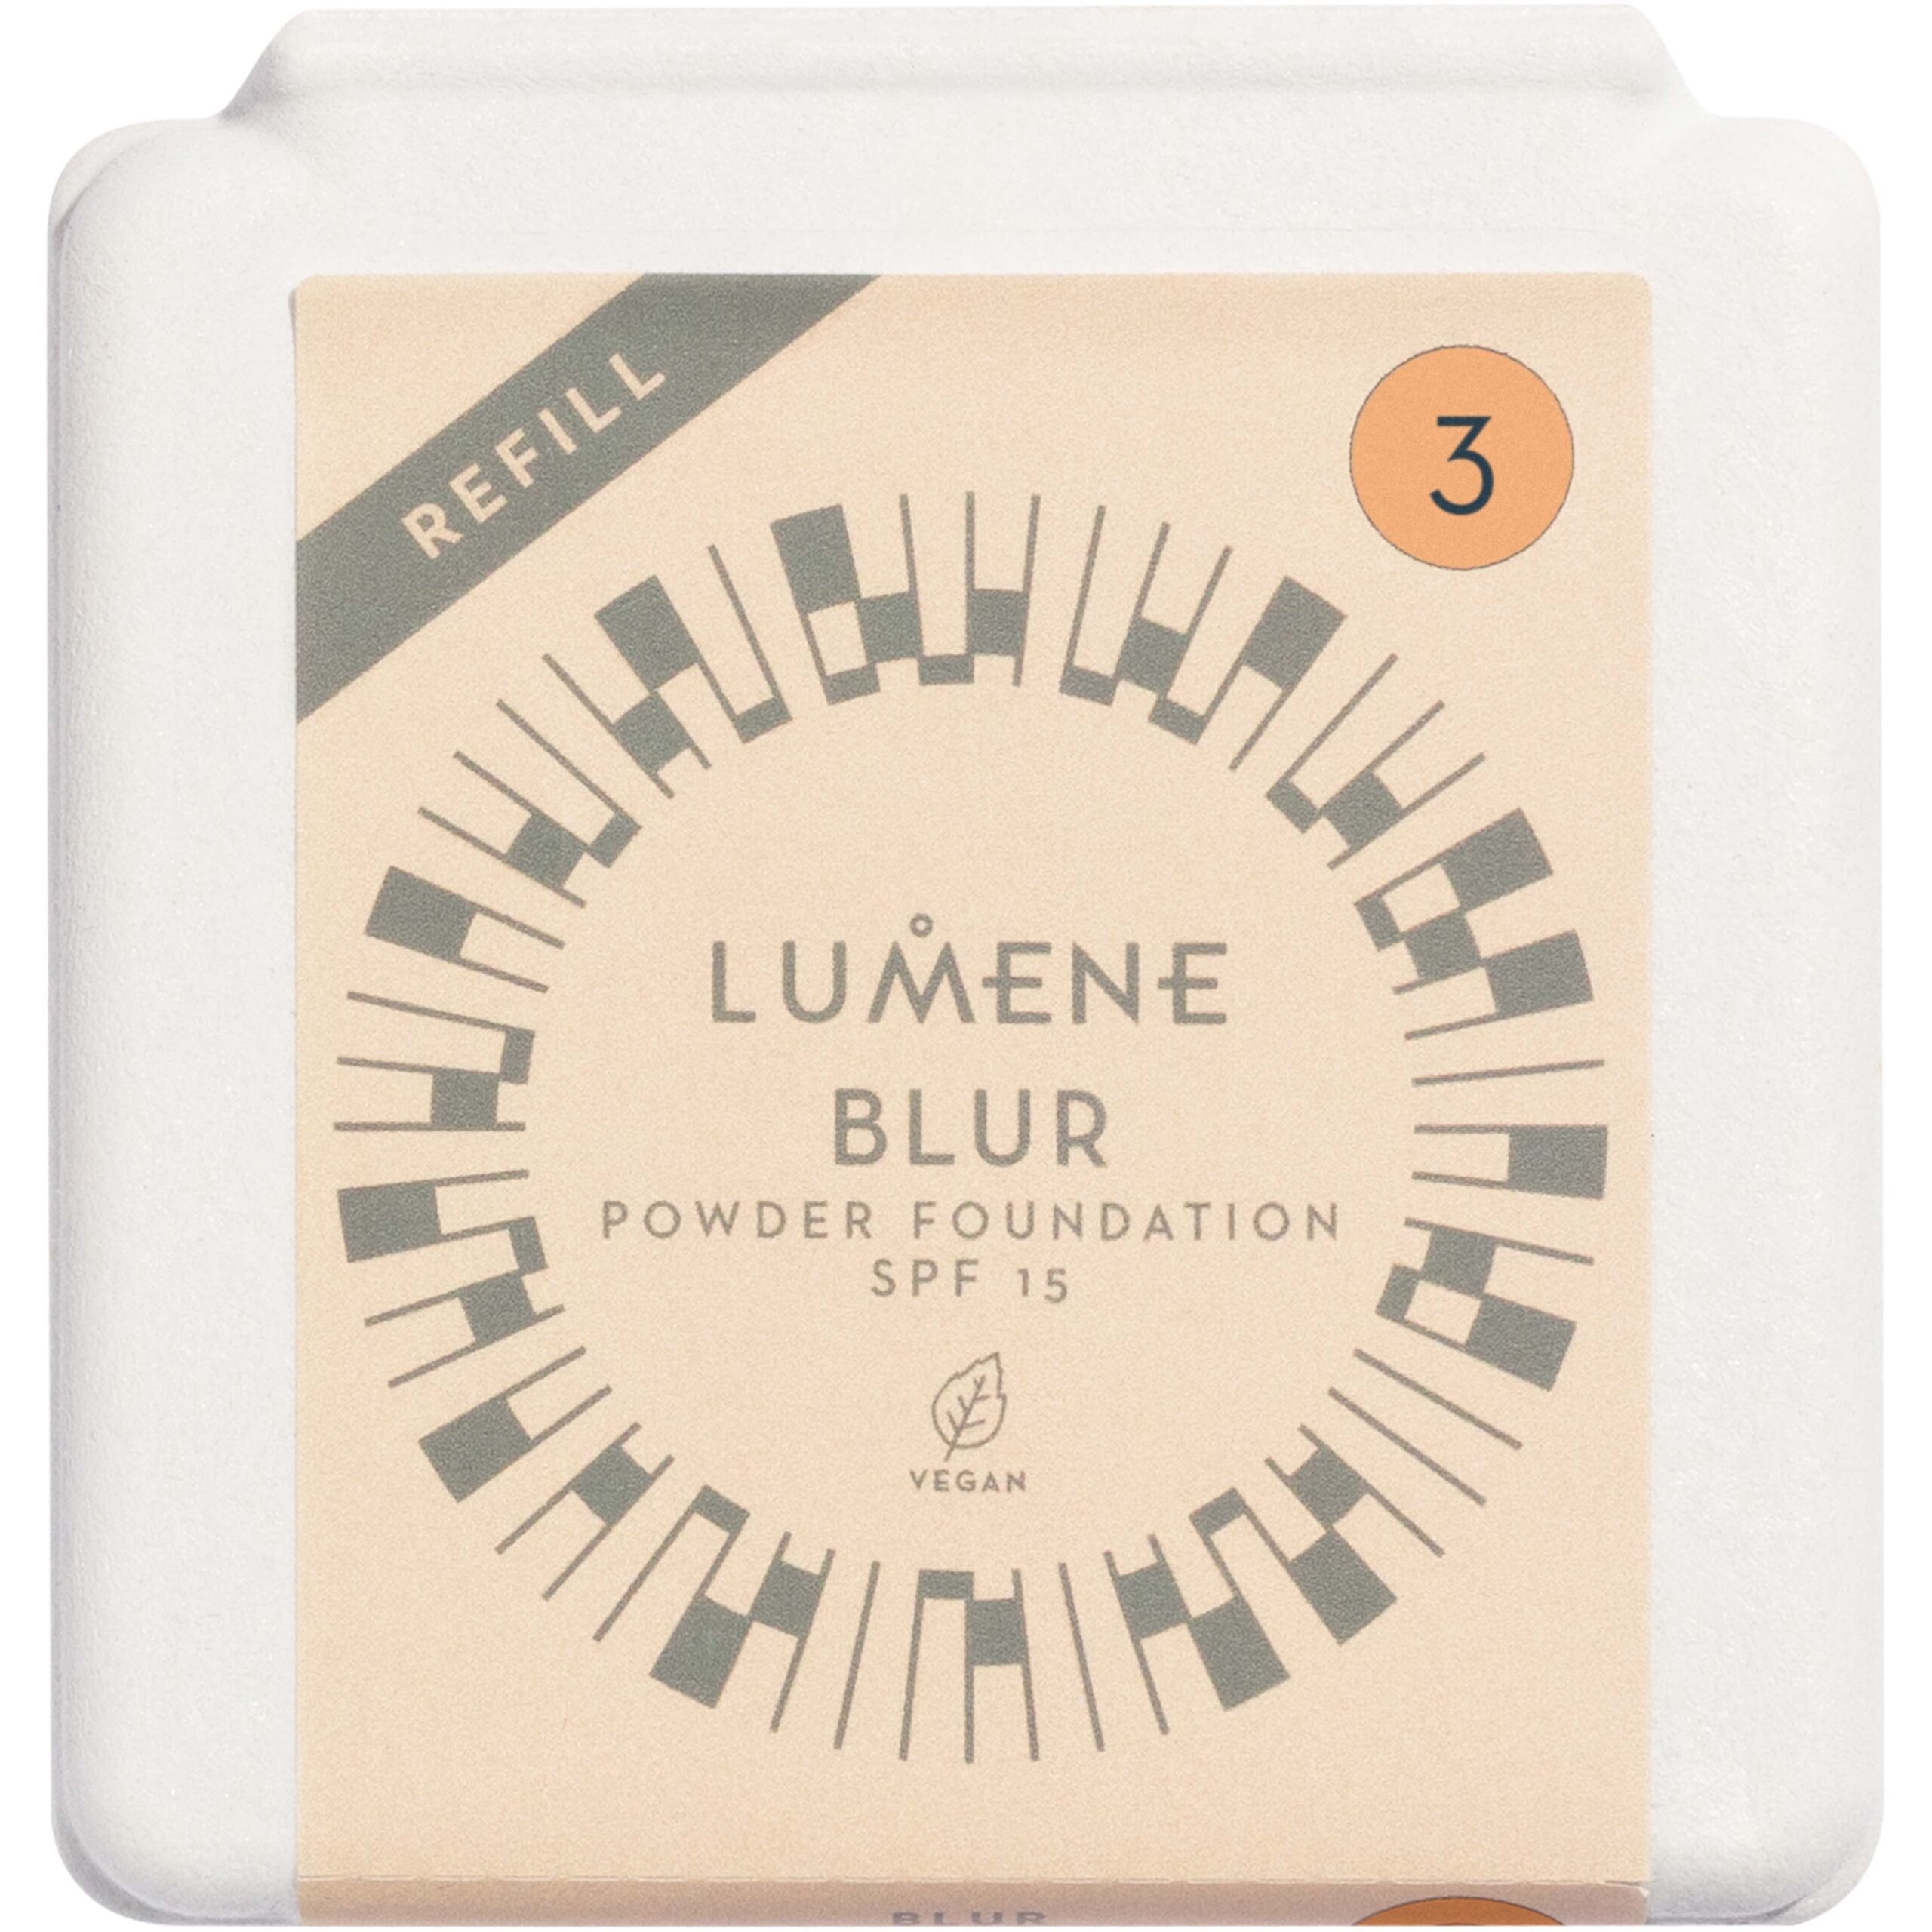 Lumene Blur Longwear Powder Foundation SPF 15 Refill 3